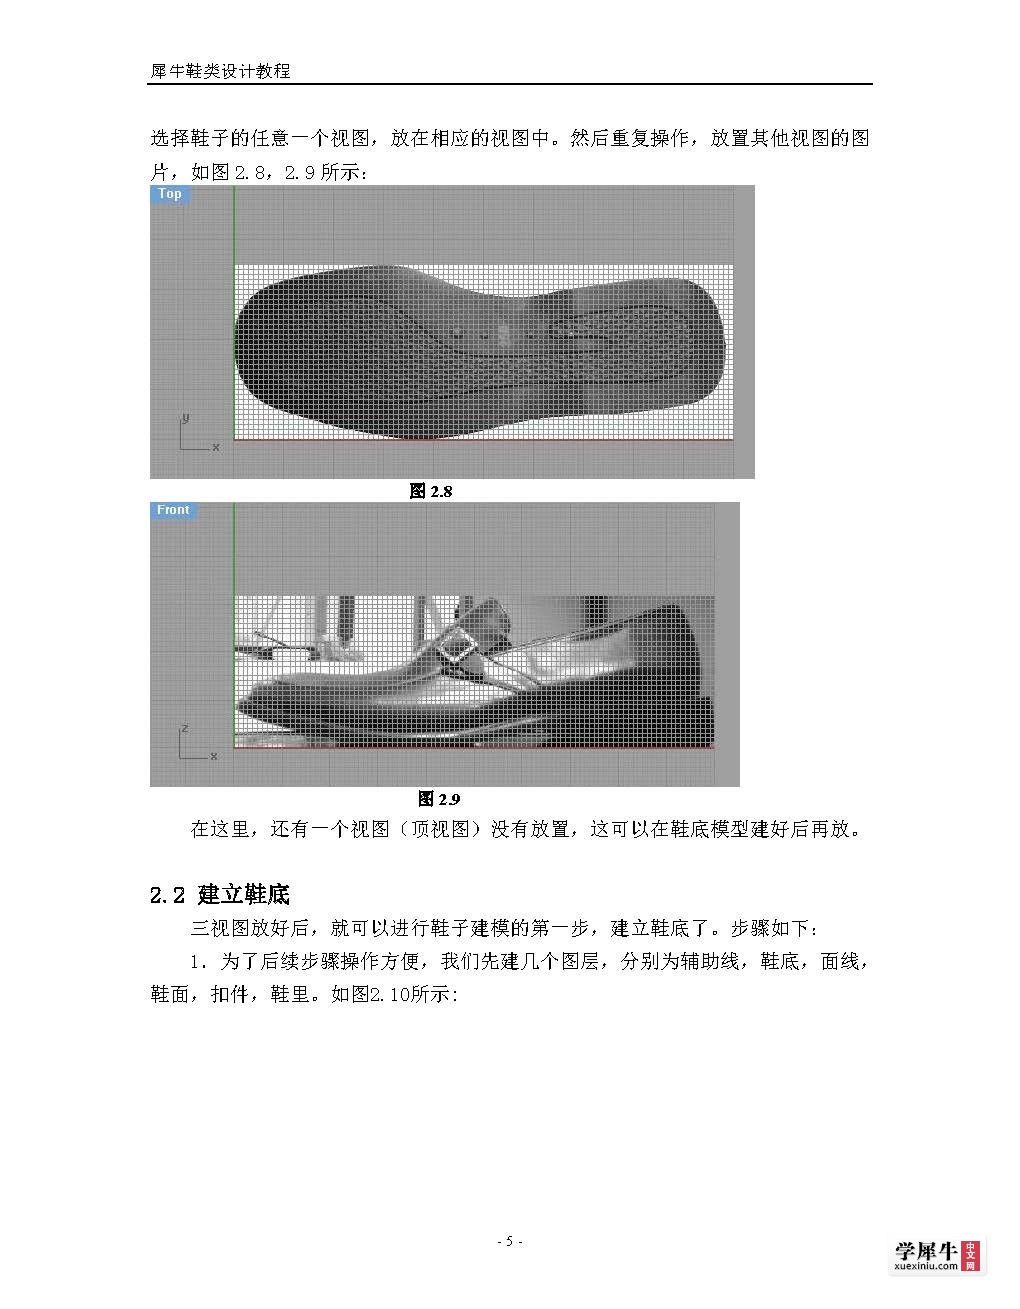 犀牛鞋类建模终极教程(转)_页面_05.jpg